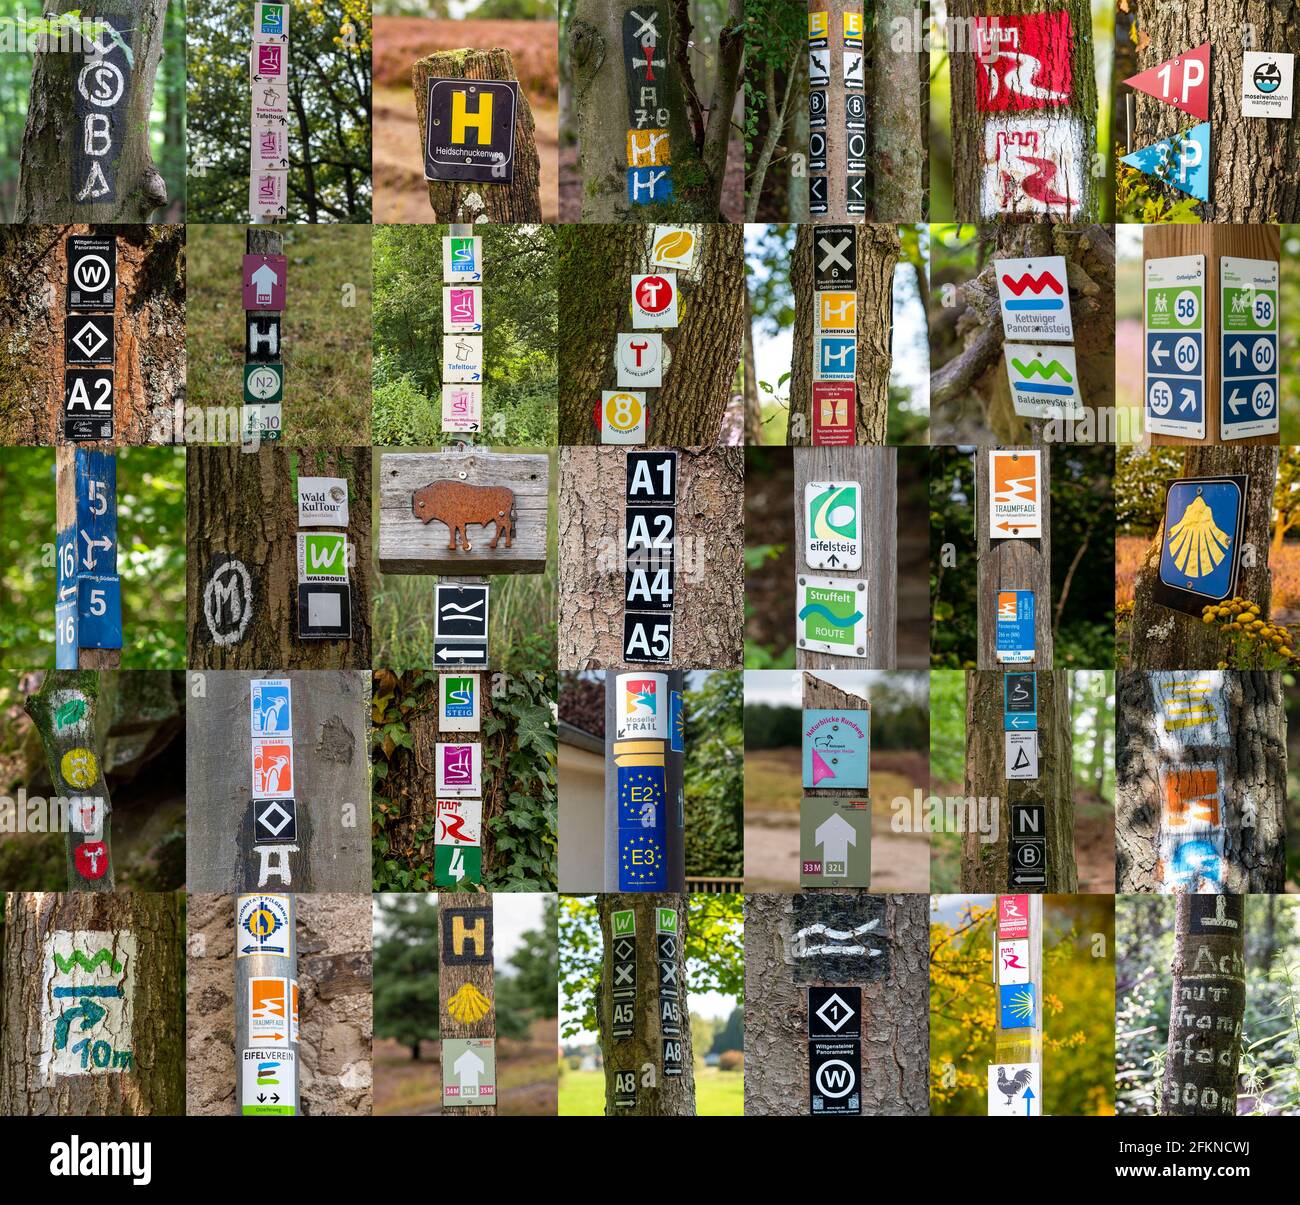 Collection de panneaux de randonnée pédestre, sentiers de randonnée, signalisation de randonnées, symboles de visite principalement sur les arbres, panneaux, Allemagne Banque D'Images